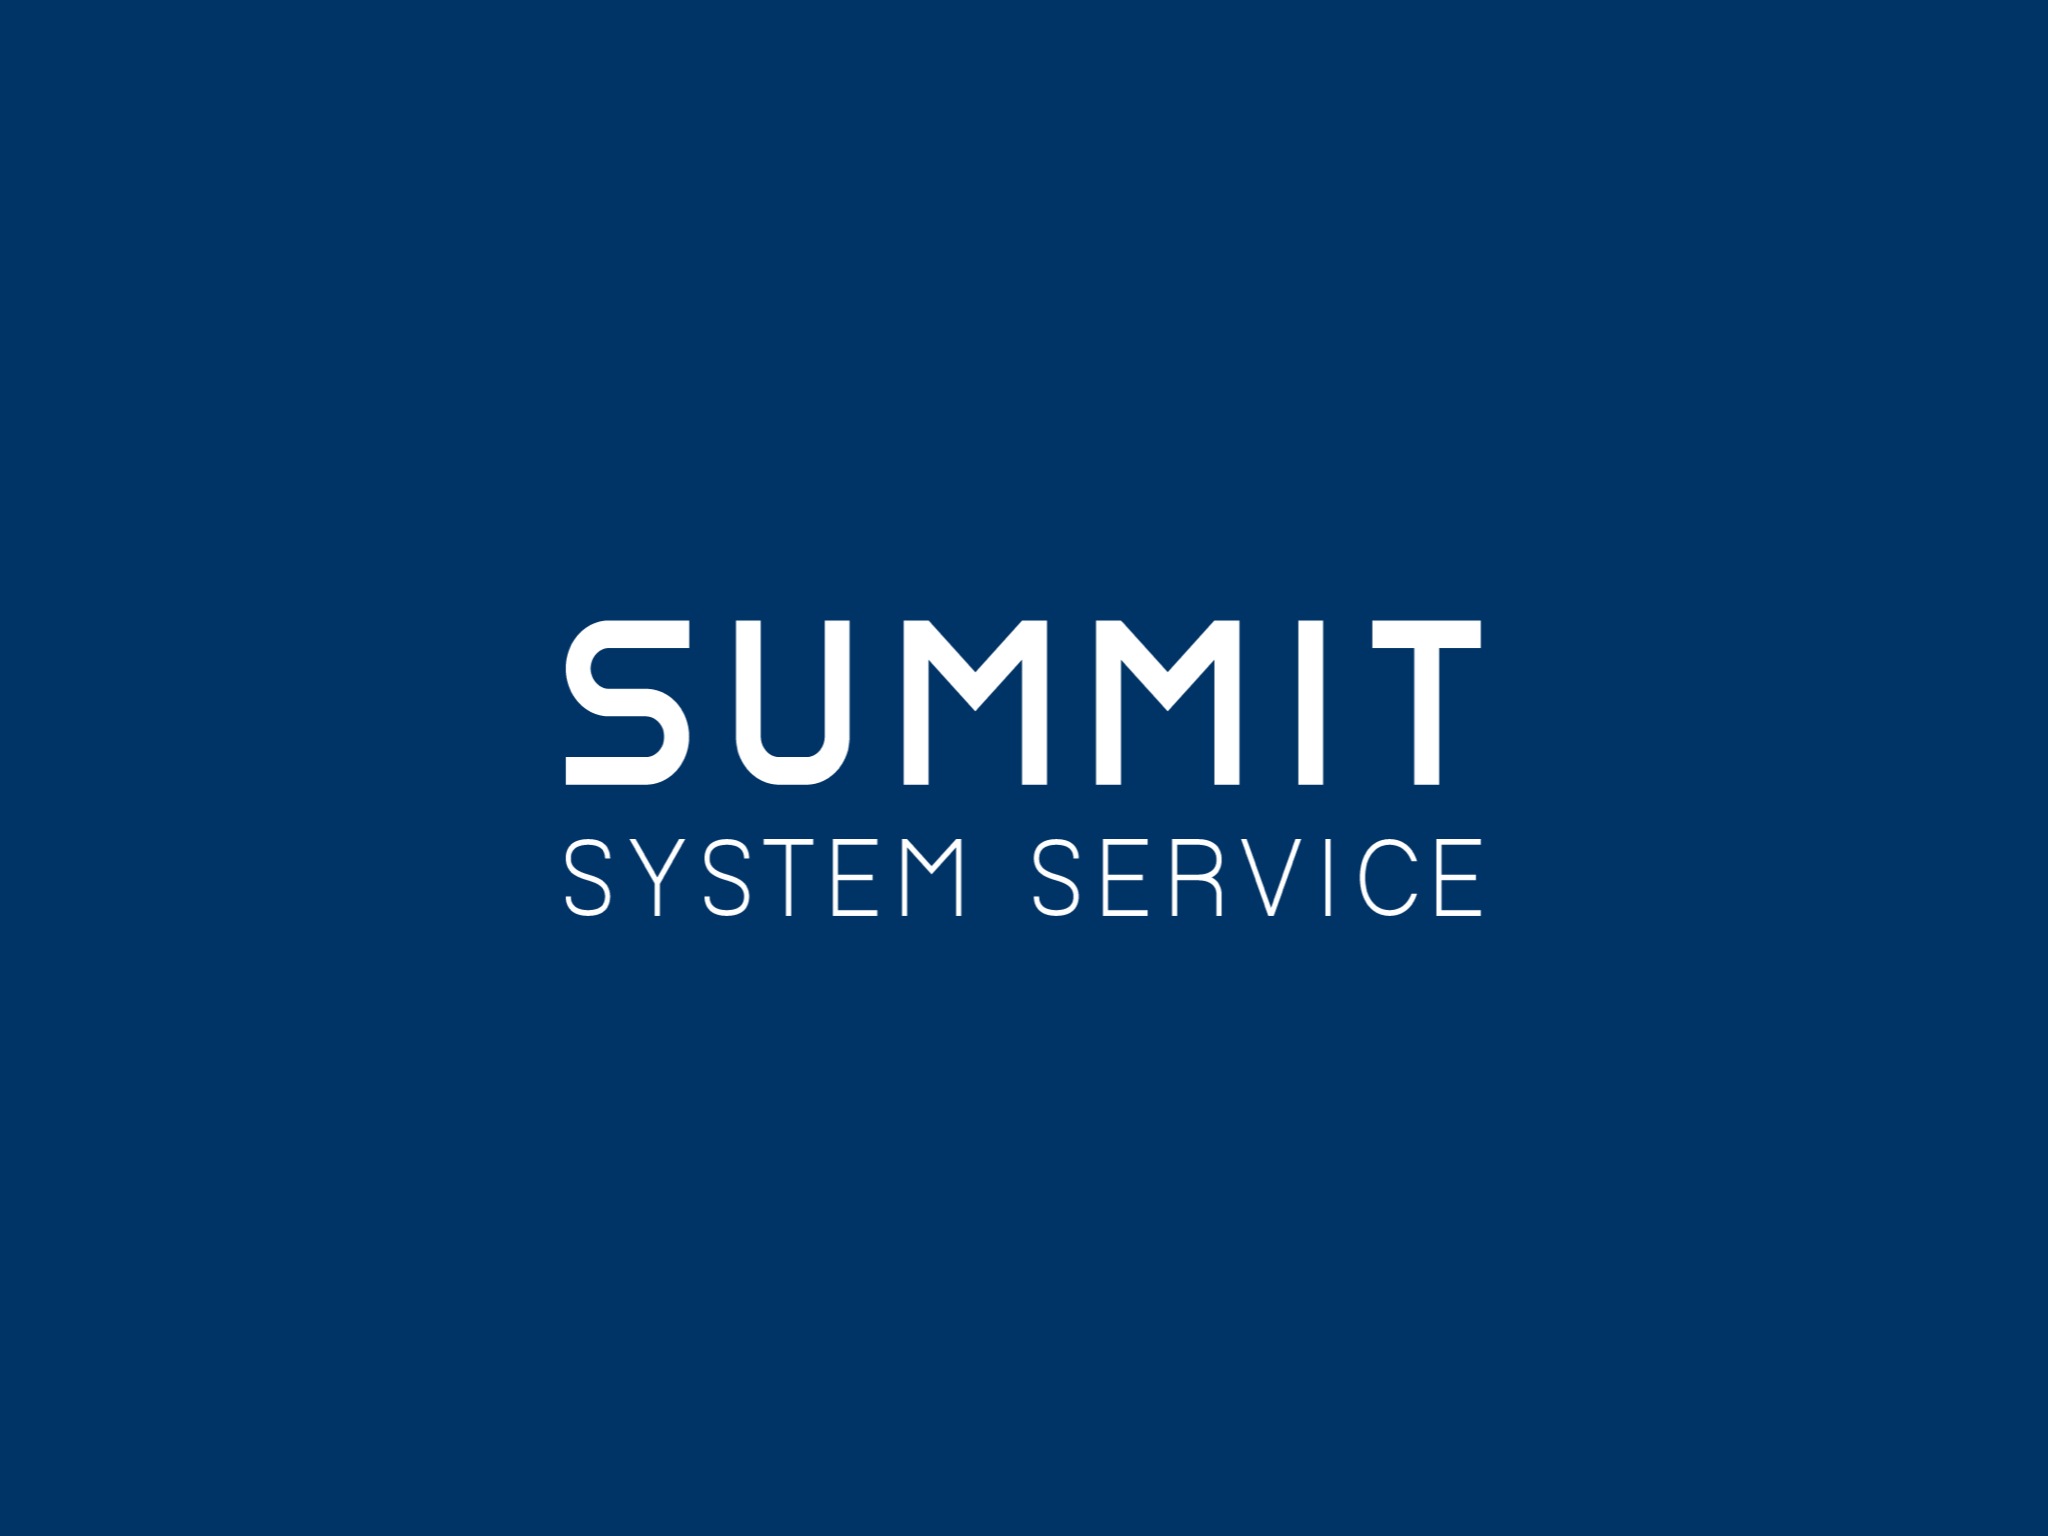 株式会社サミットシステムサービス | Summit System Service Inc.